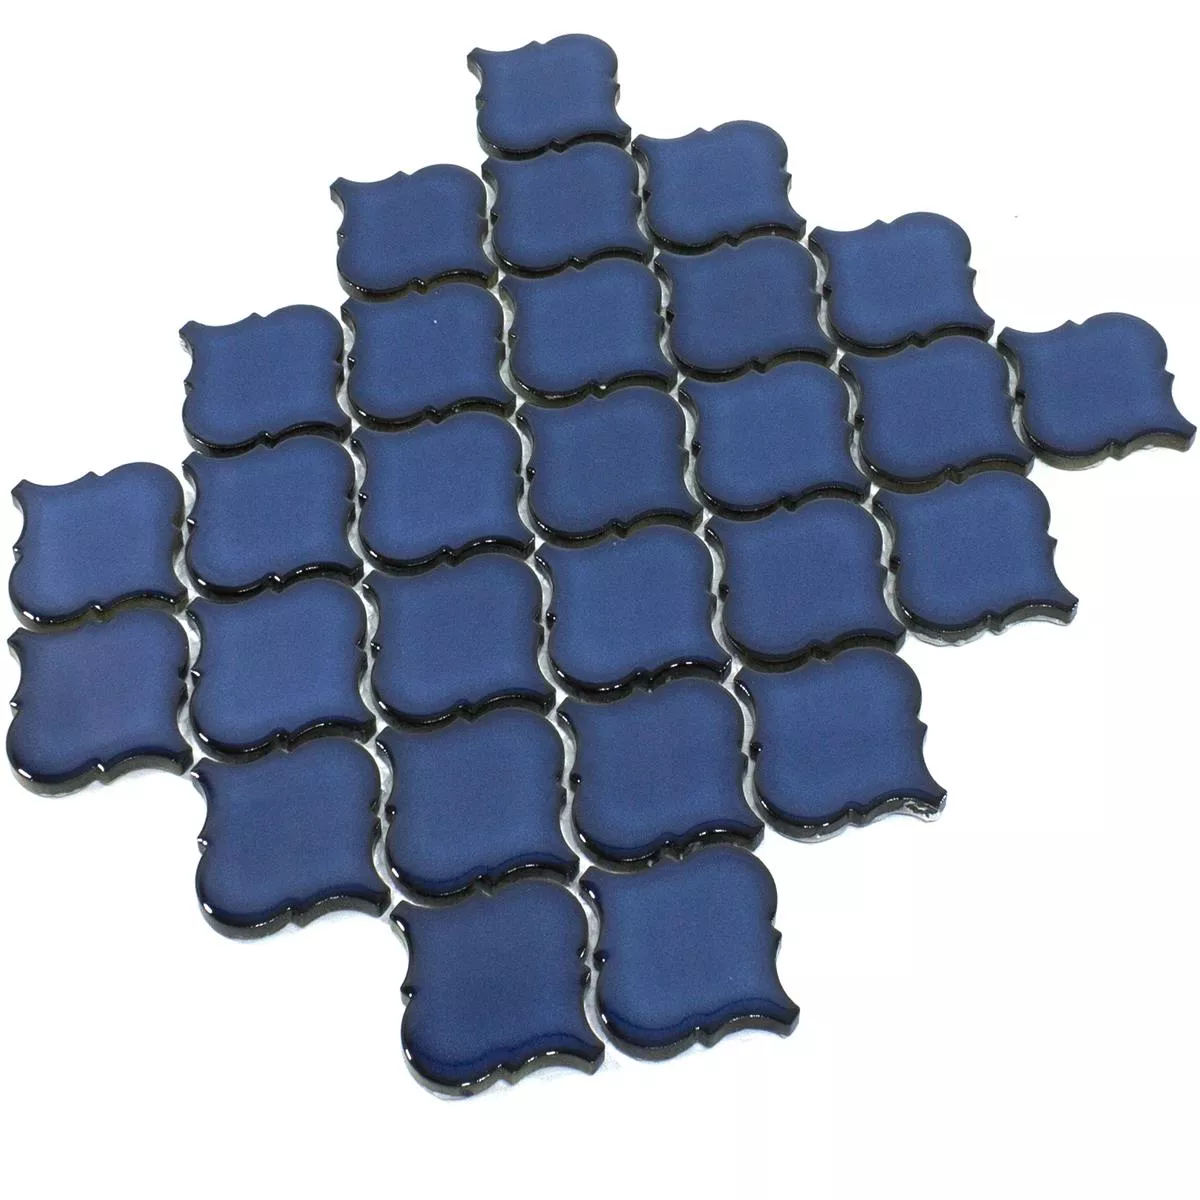 Ceramic Mosaic Tiles Asmara Arabesque Blue